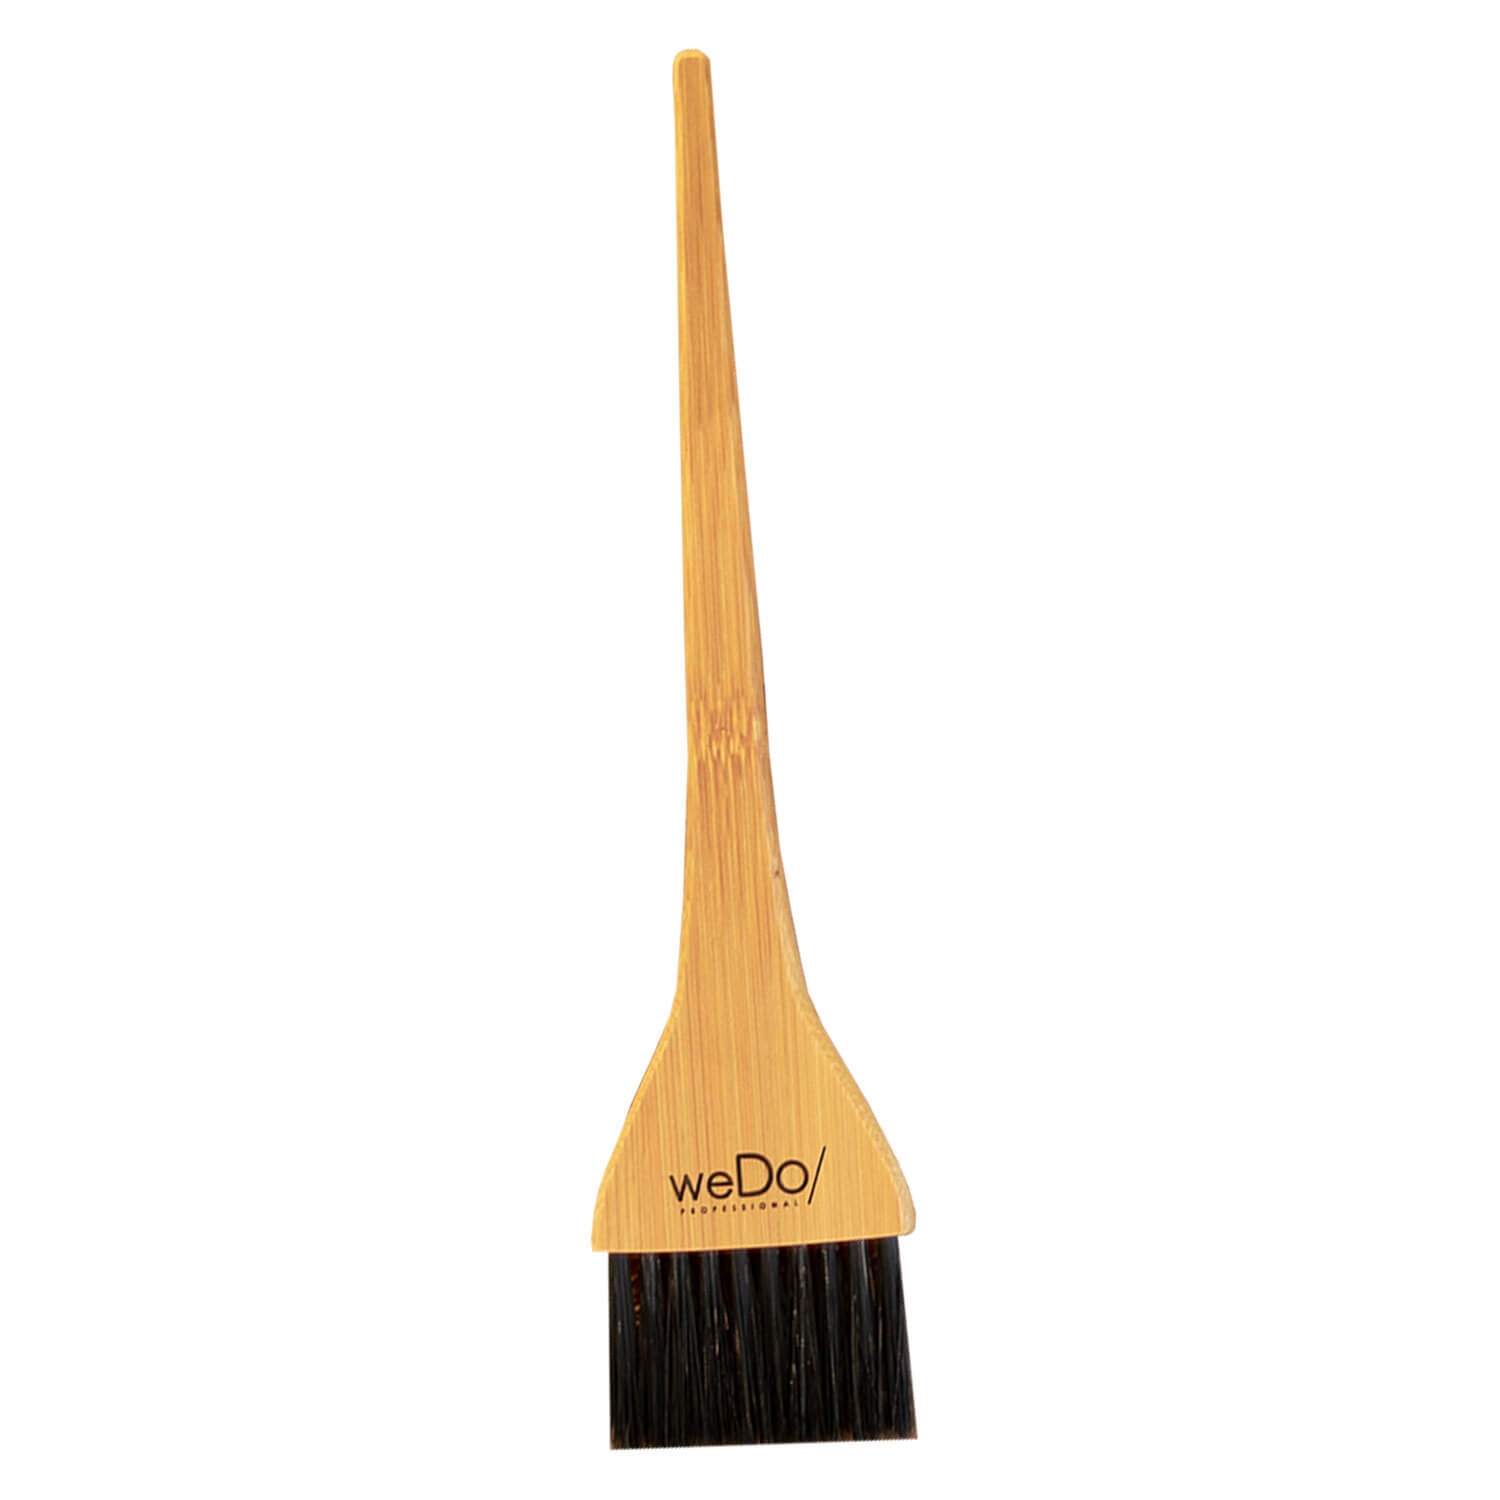 Produktbild von weDo/ - Bamboo Treatment Brush